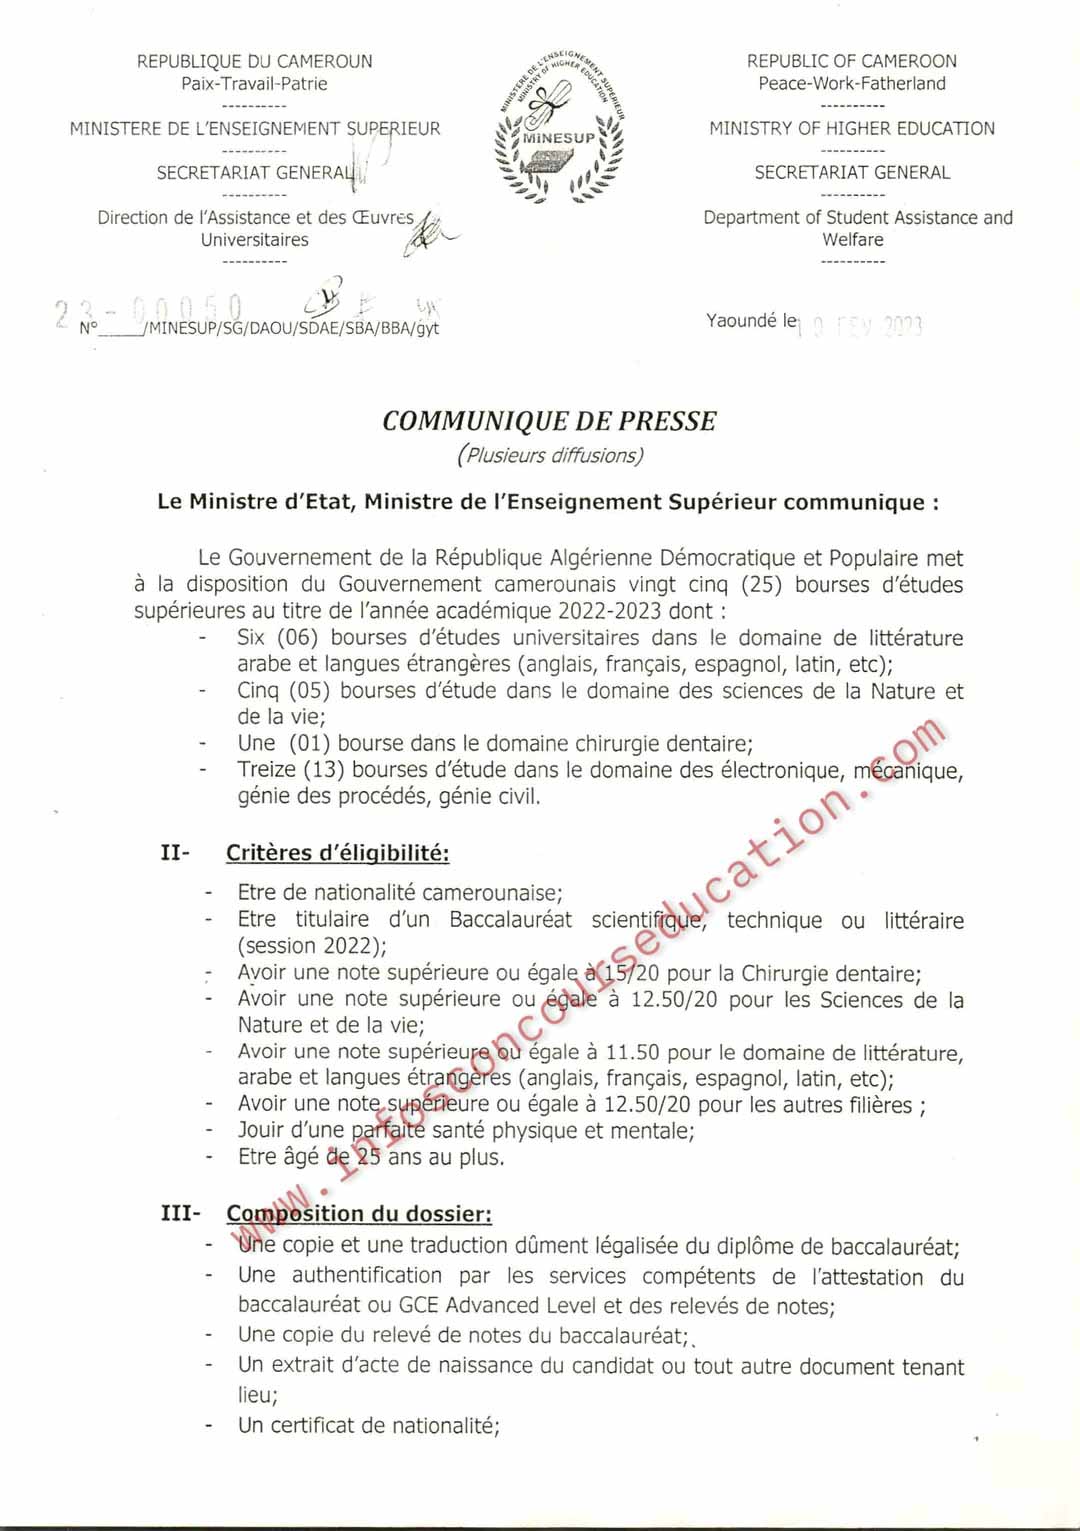 Le Gouvernement Algérien offre vignt-cinq (25) bourses d'études supérieures au titre de l'année académique 2022/2023 au cameroun